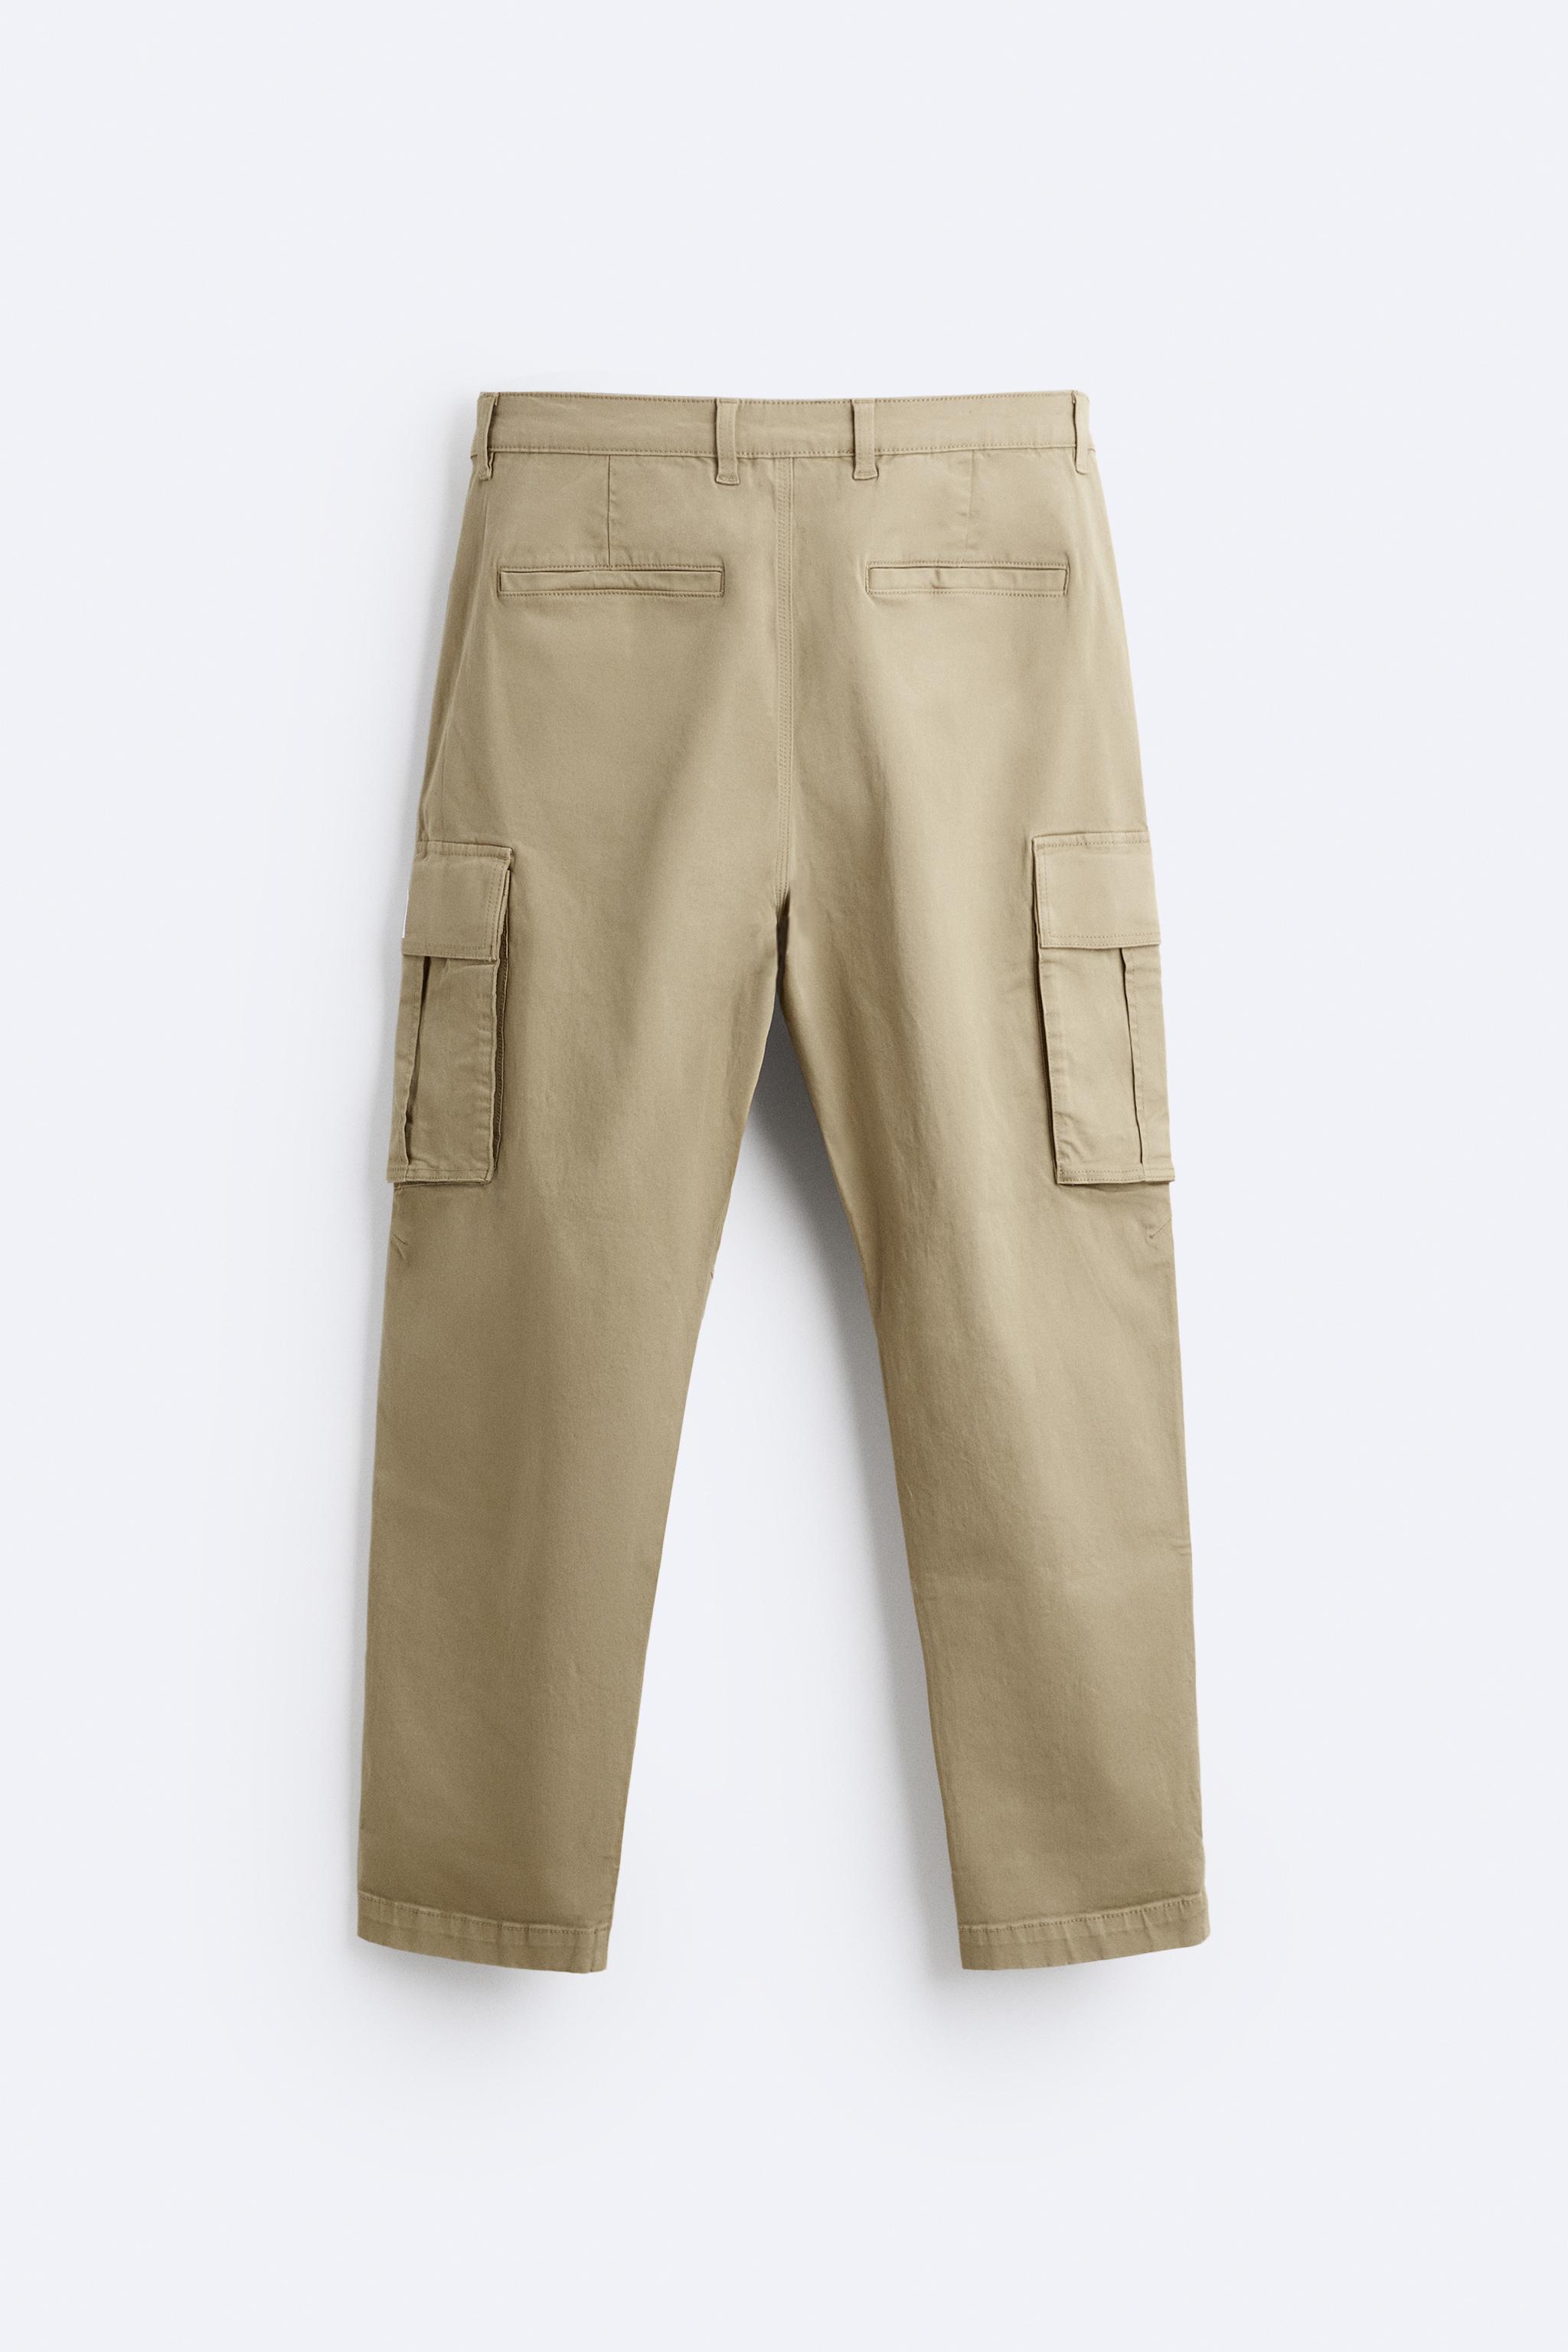 Zara, Pants, Cargo Joggersjeans